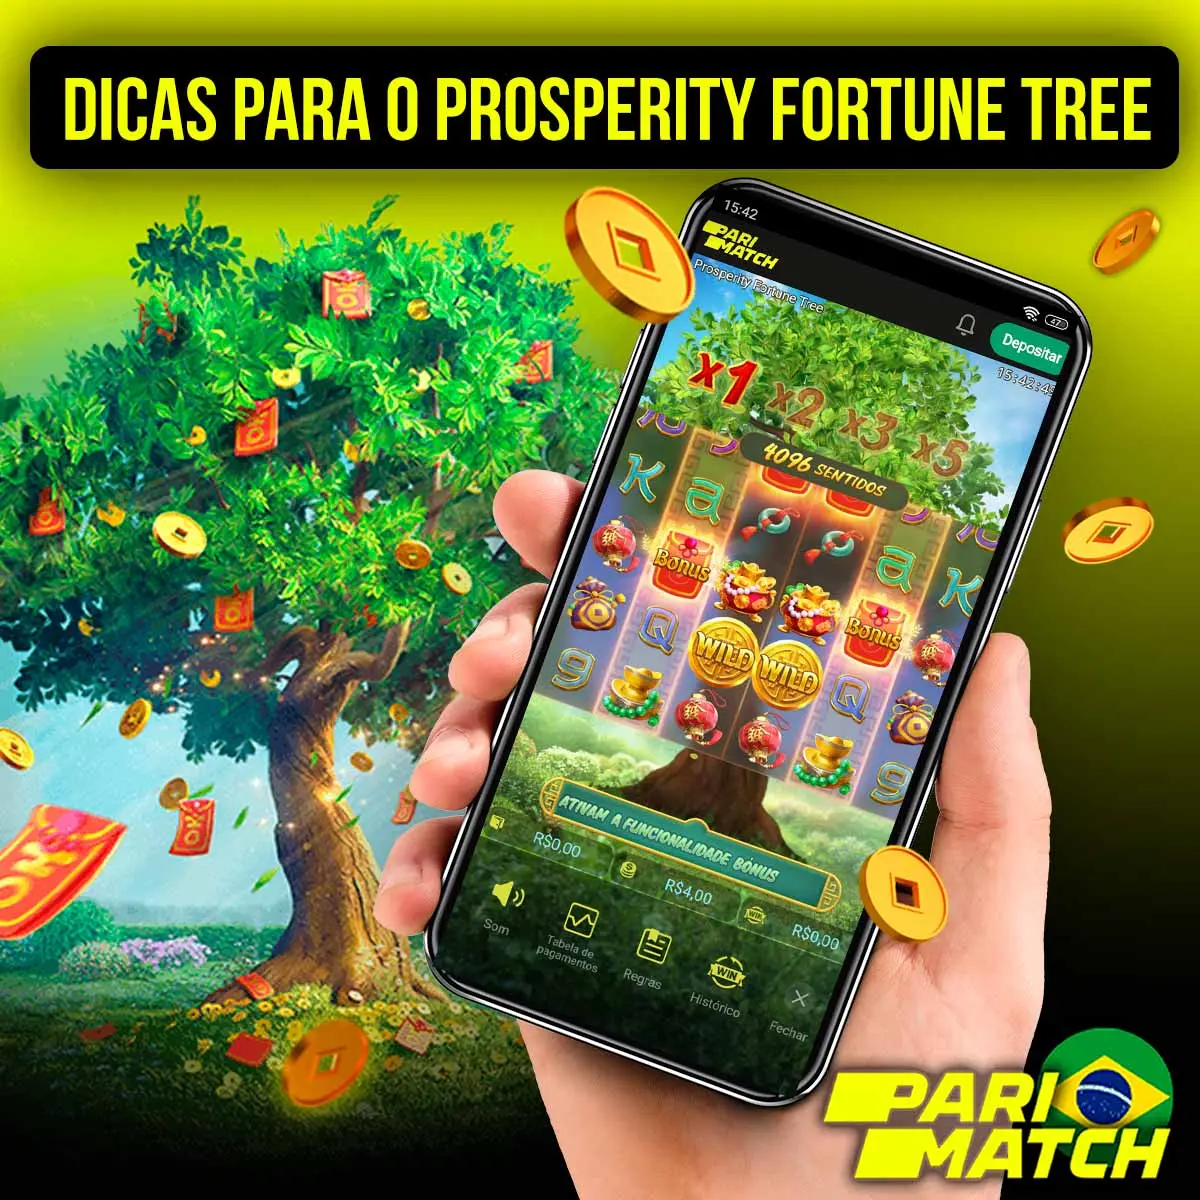 Recomendações para jogar Prosperity Fortune Tree Parimatch